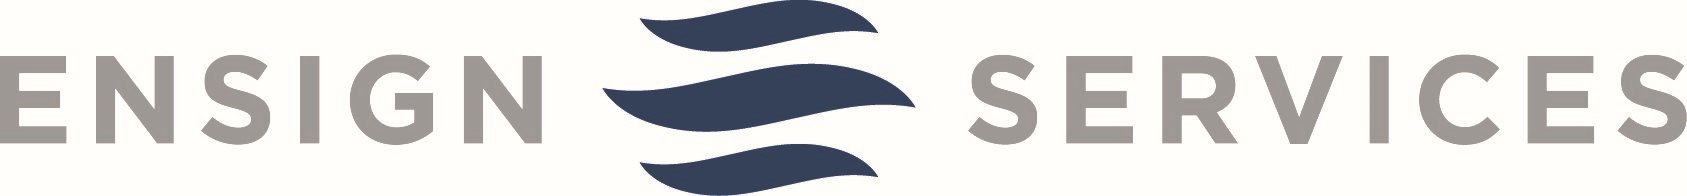 Ensign Services logo